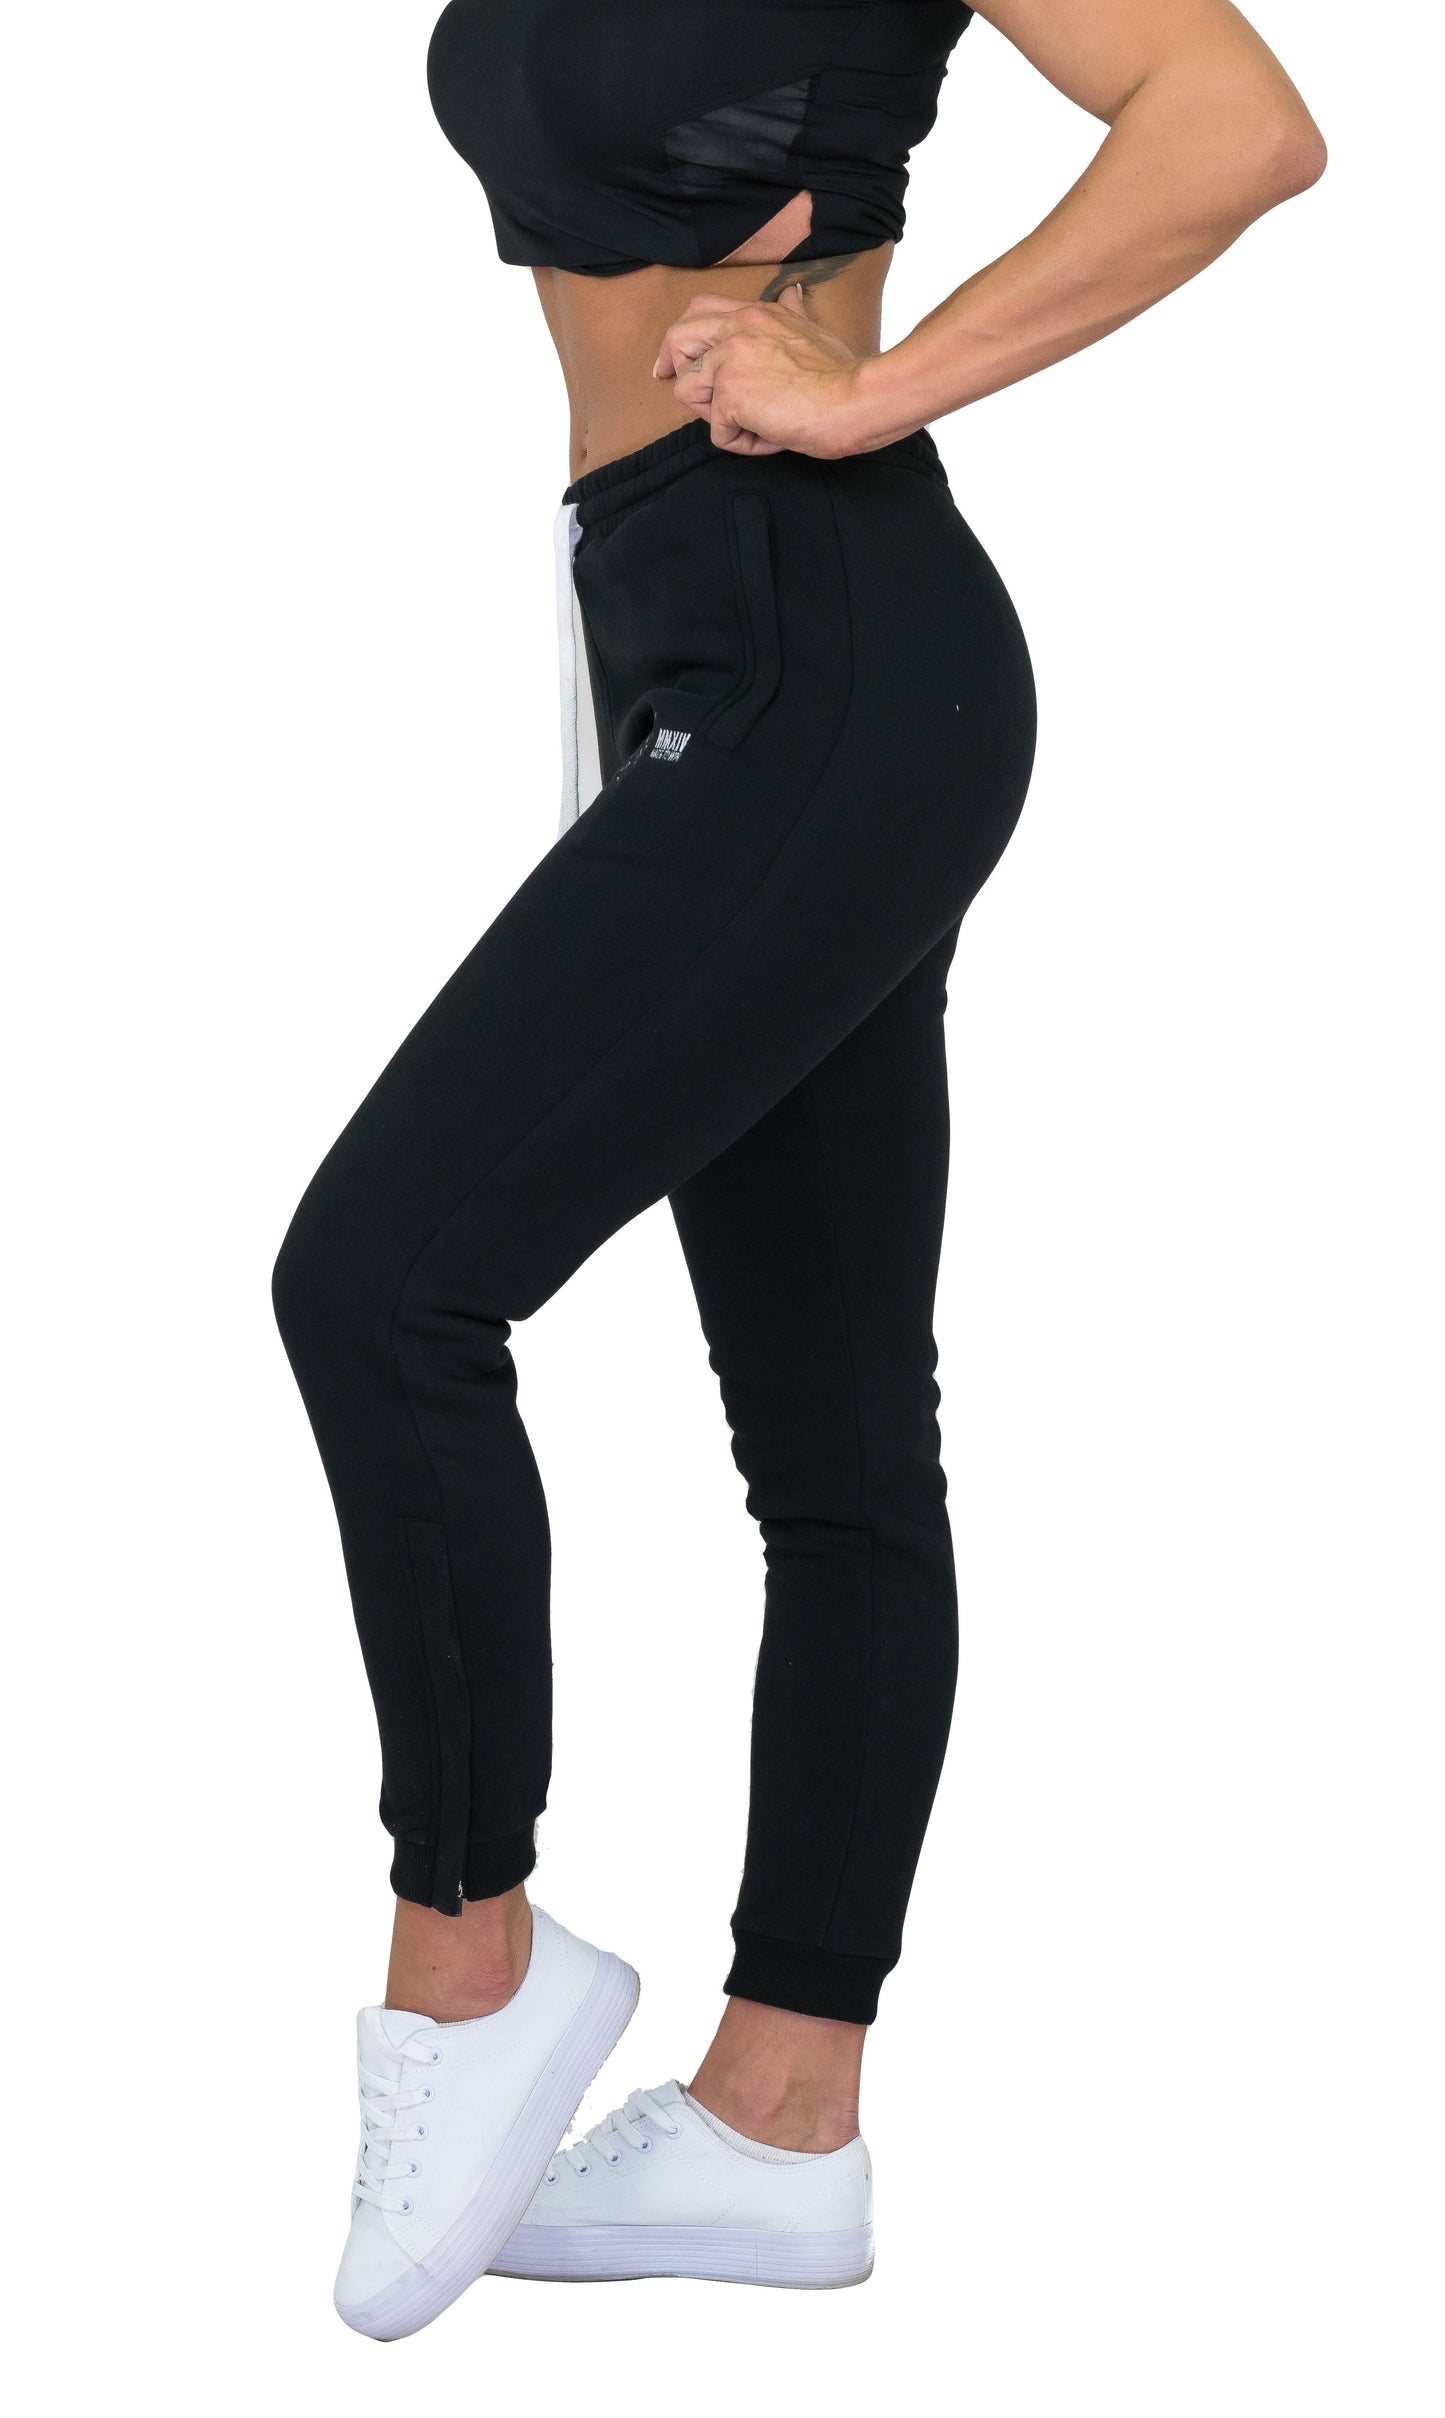 Pantalones deportivos para mujer - negro / camuflaje